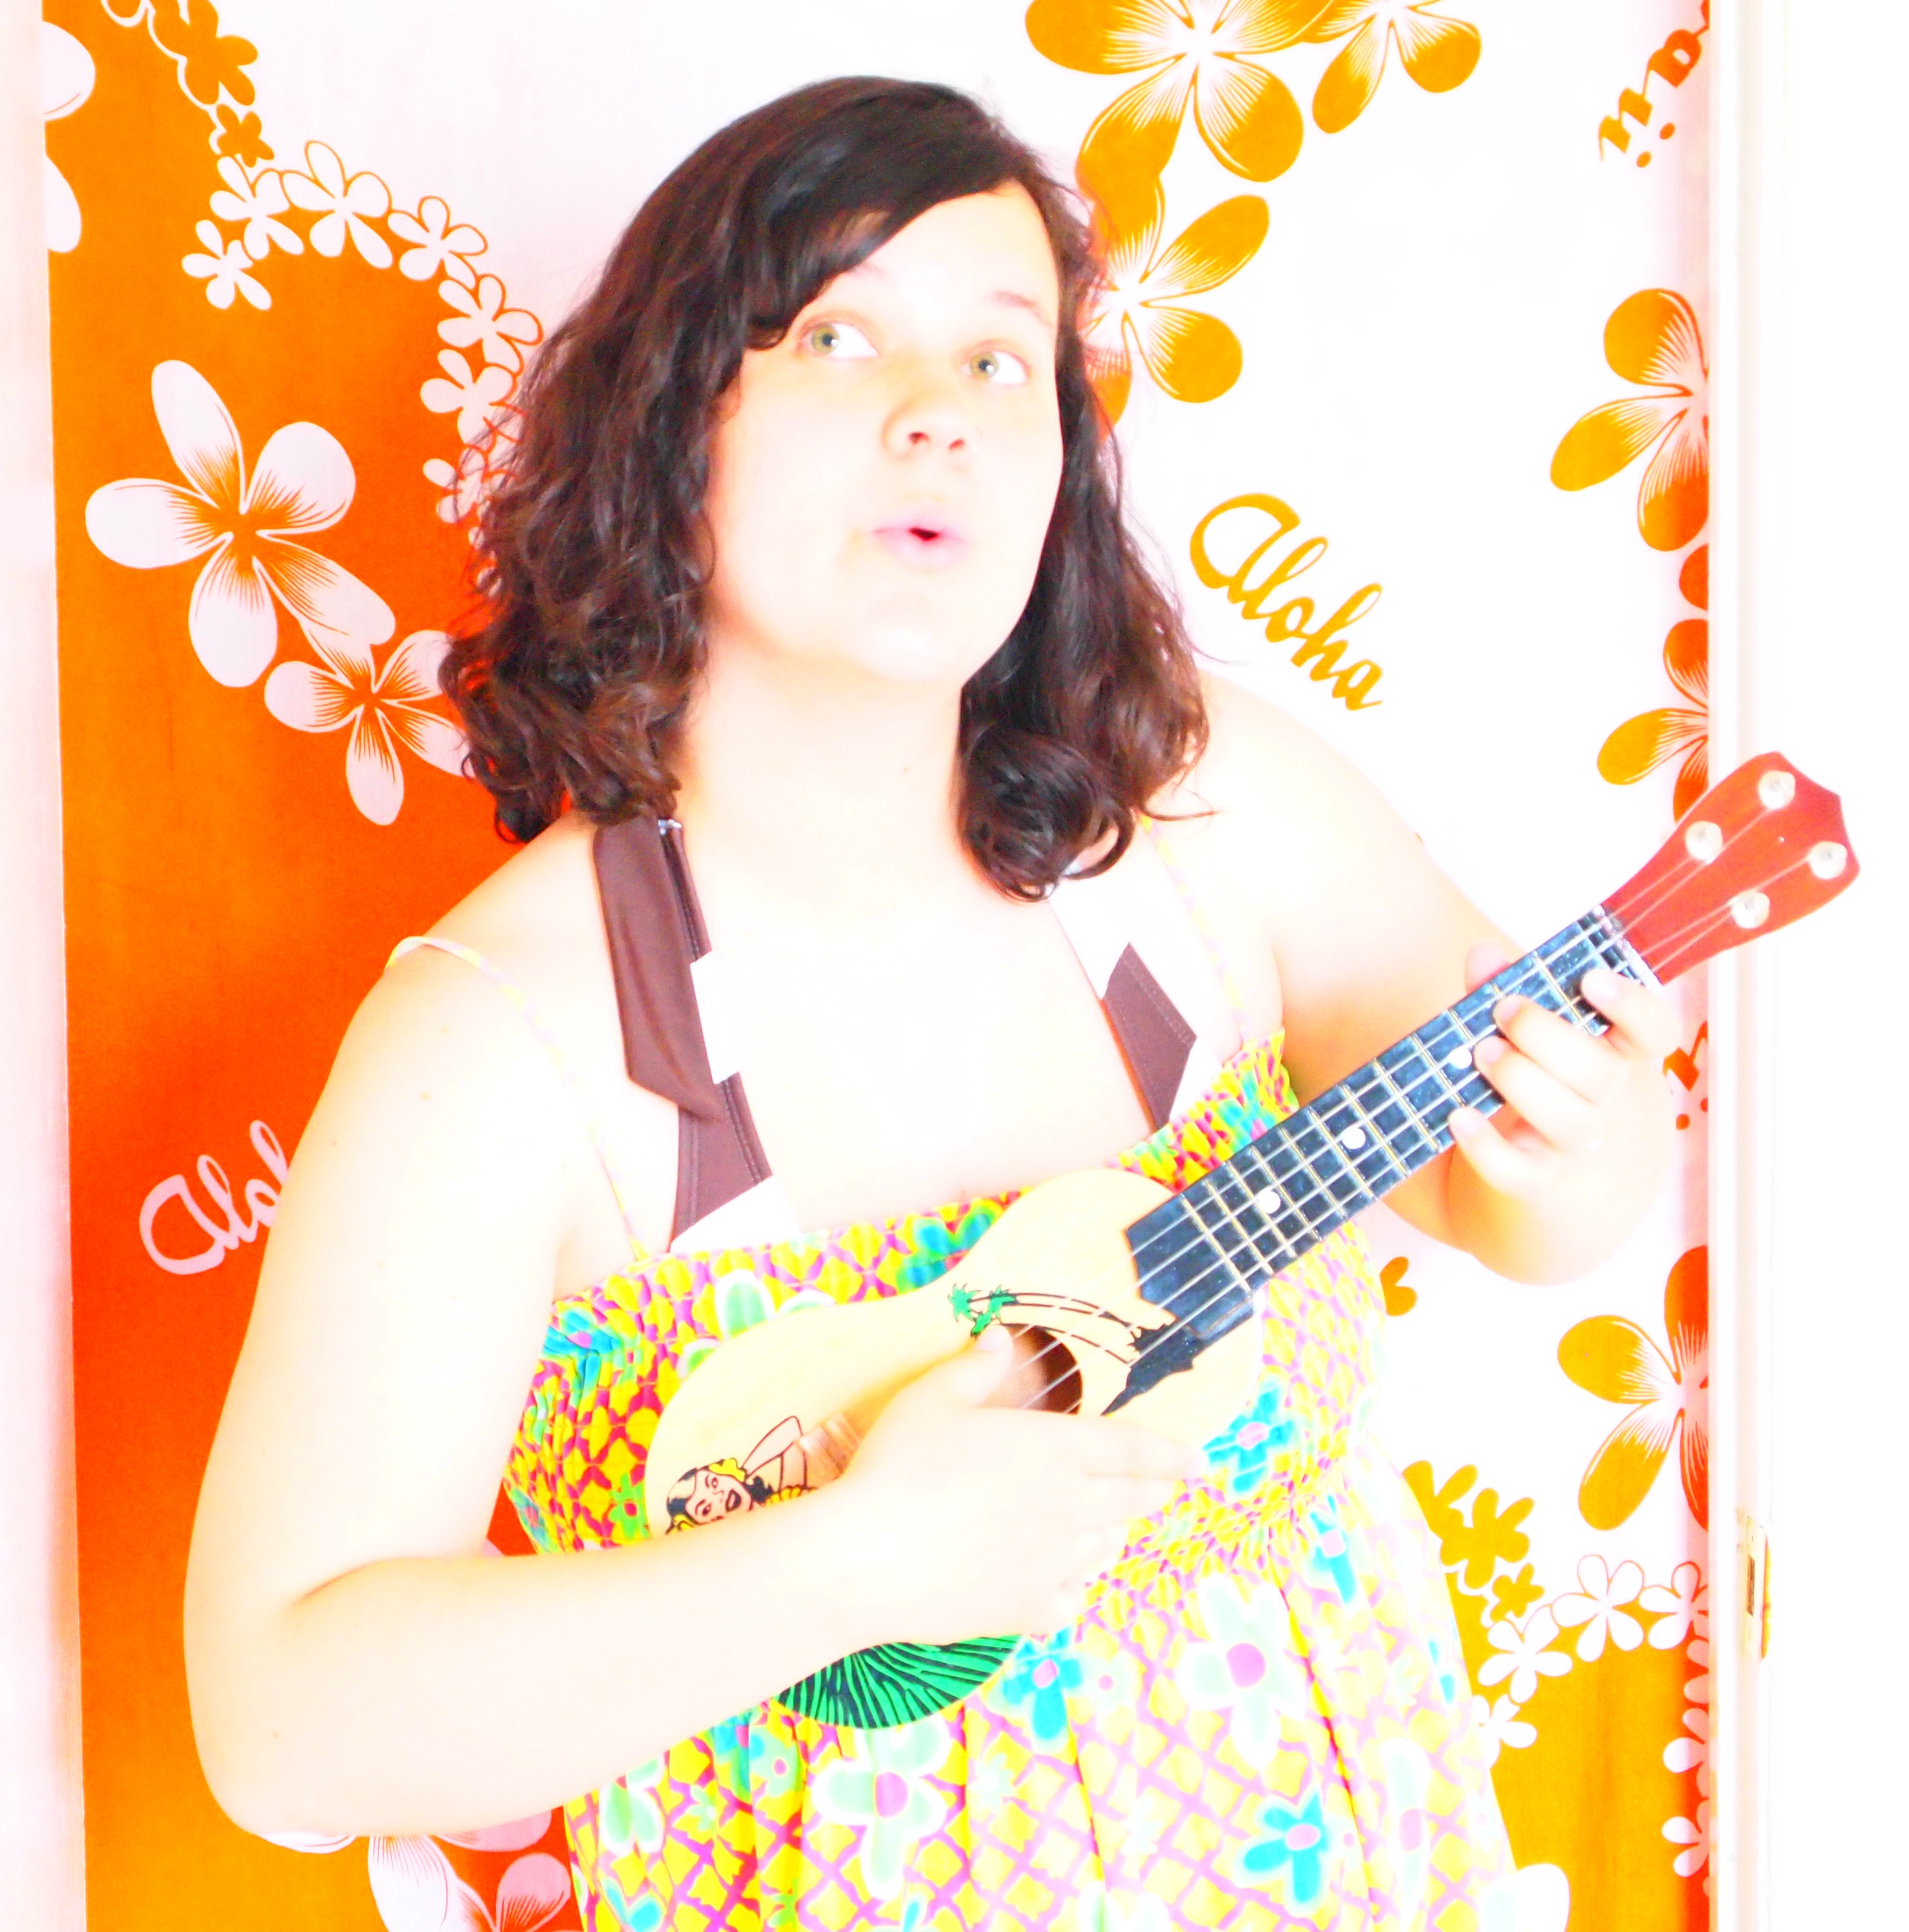 Ingrid+michaelson+be+ok+chords+ukulele